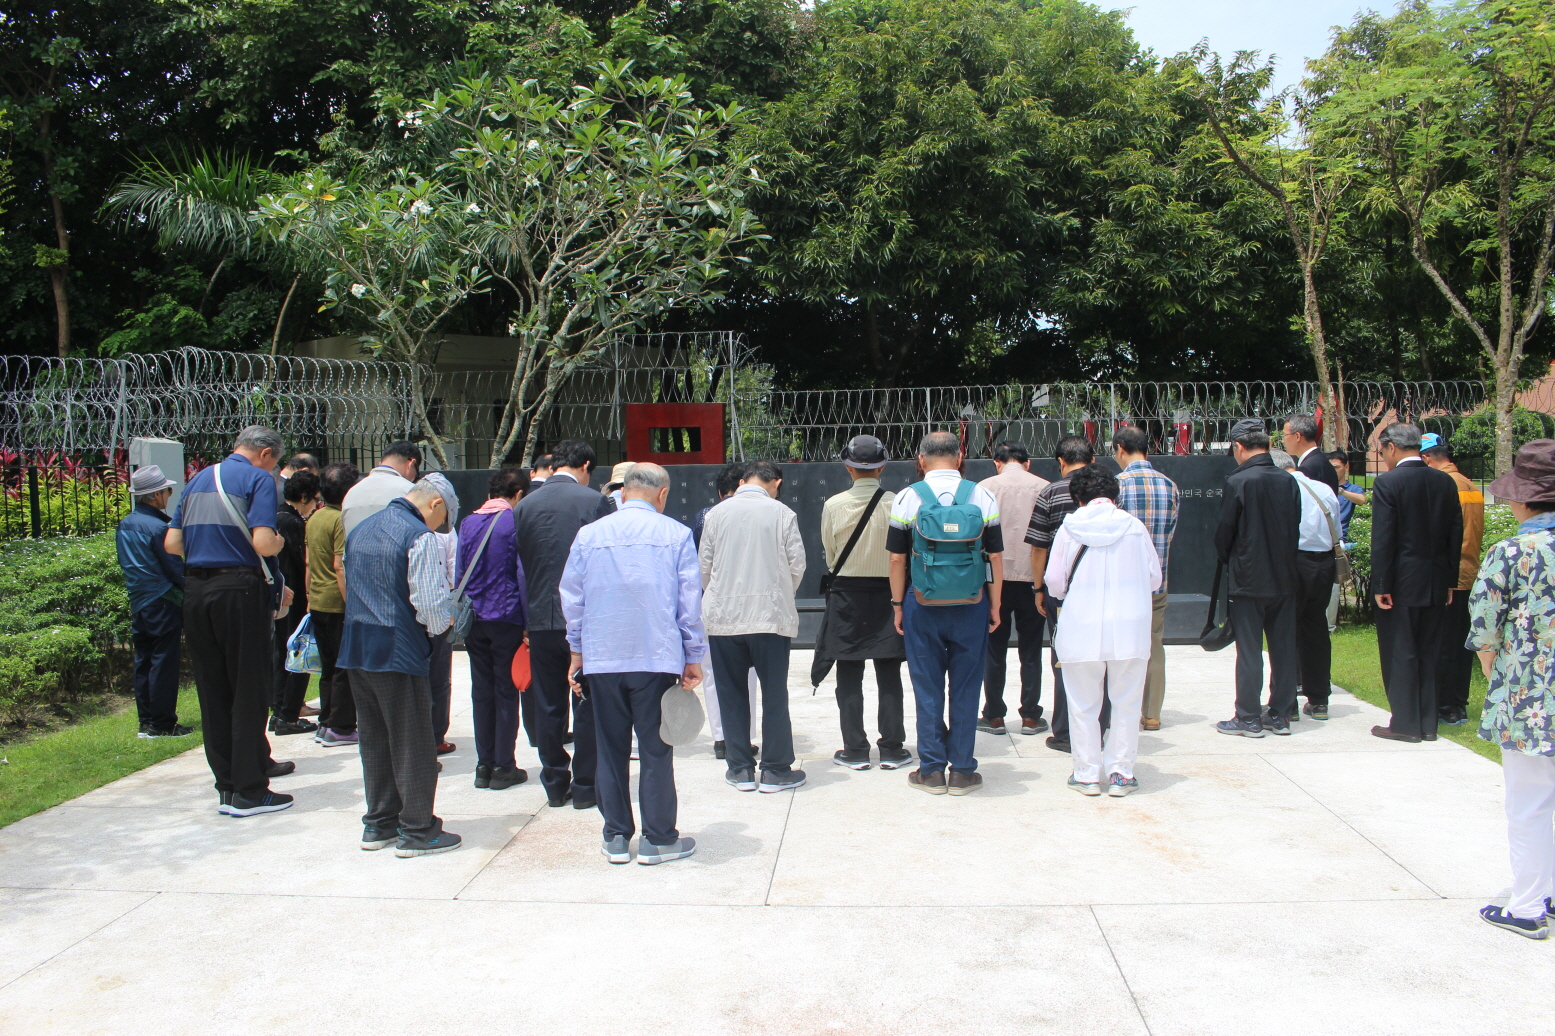 1983년 10월에 발생한 [아웅산 묘소 테러 사건]의 희생자 17명을 모신 [아웅산 묘역 대한민국 순국사절 추모지] 앞에서 묵념하고 있는 추도순례단.